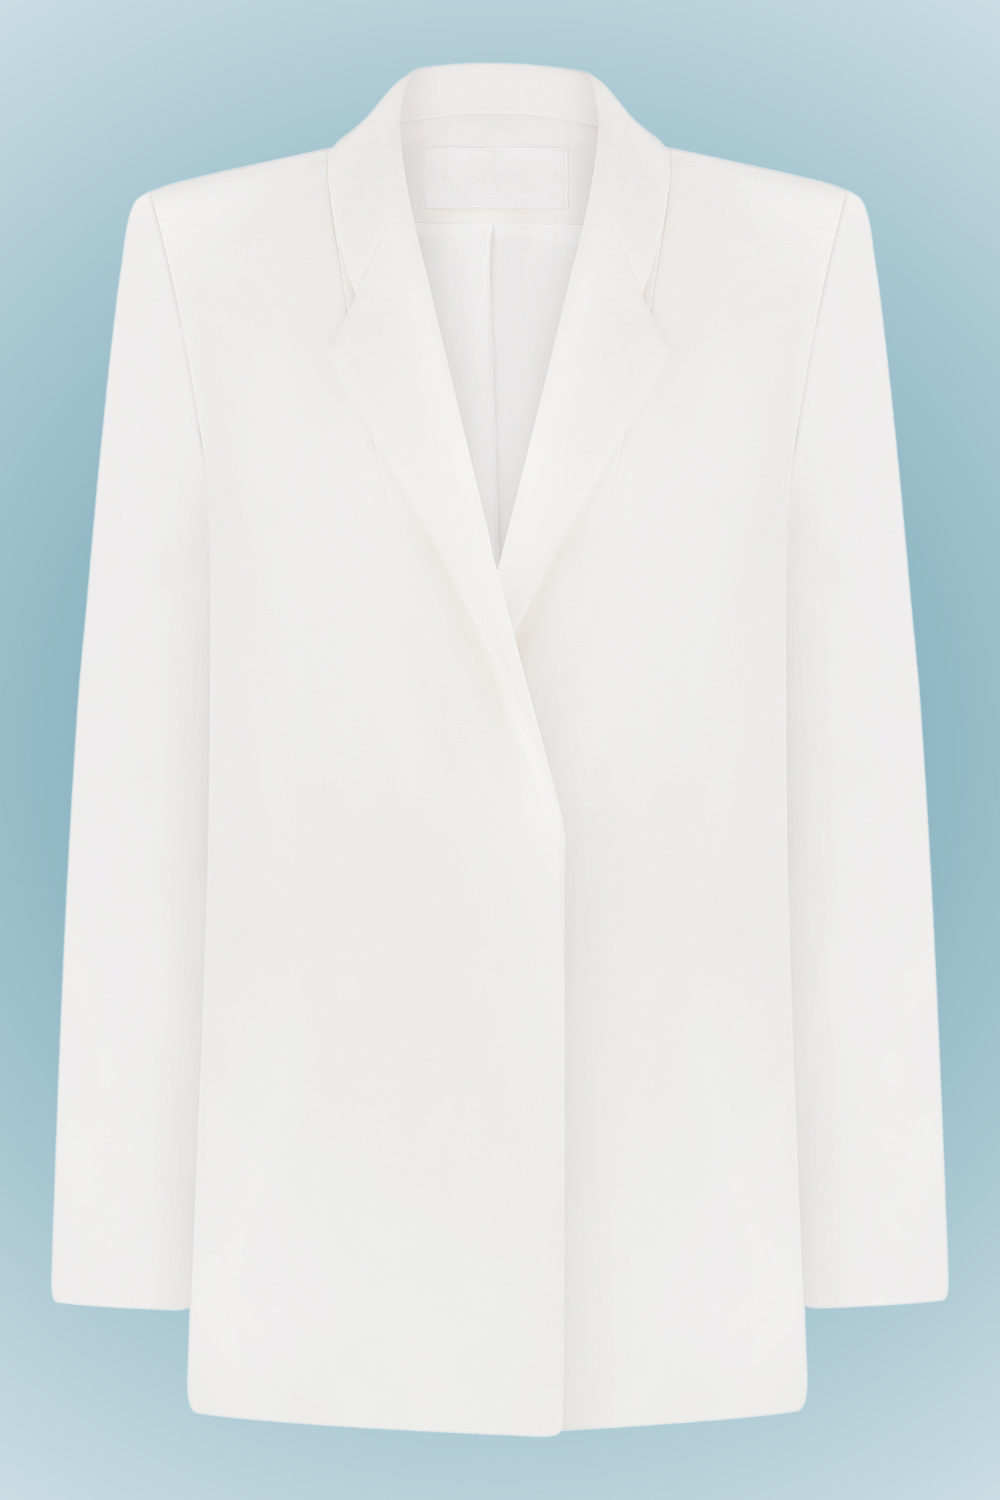 FW2001 straight jacket (Total White)